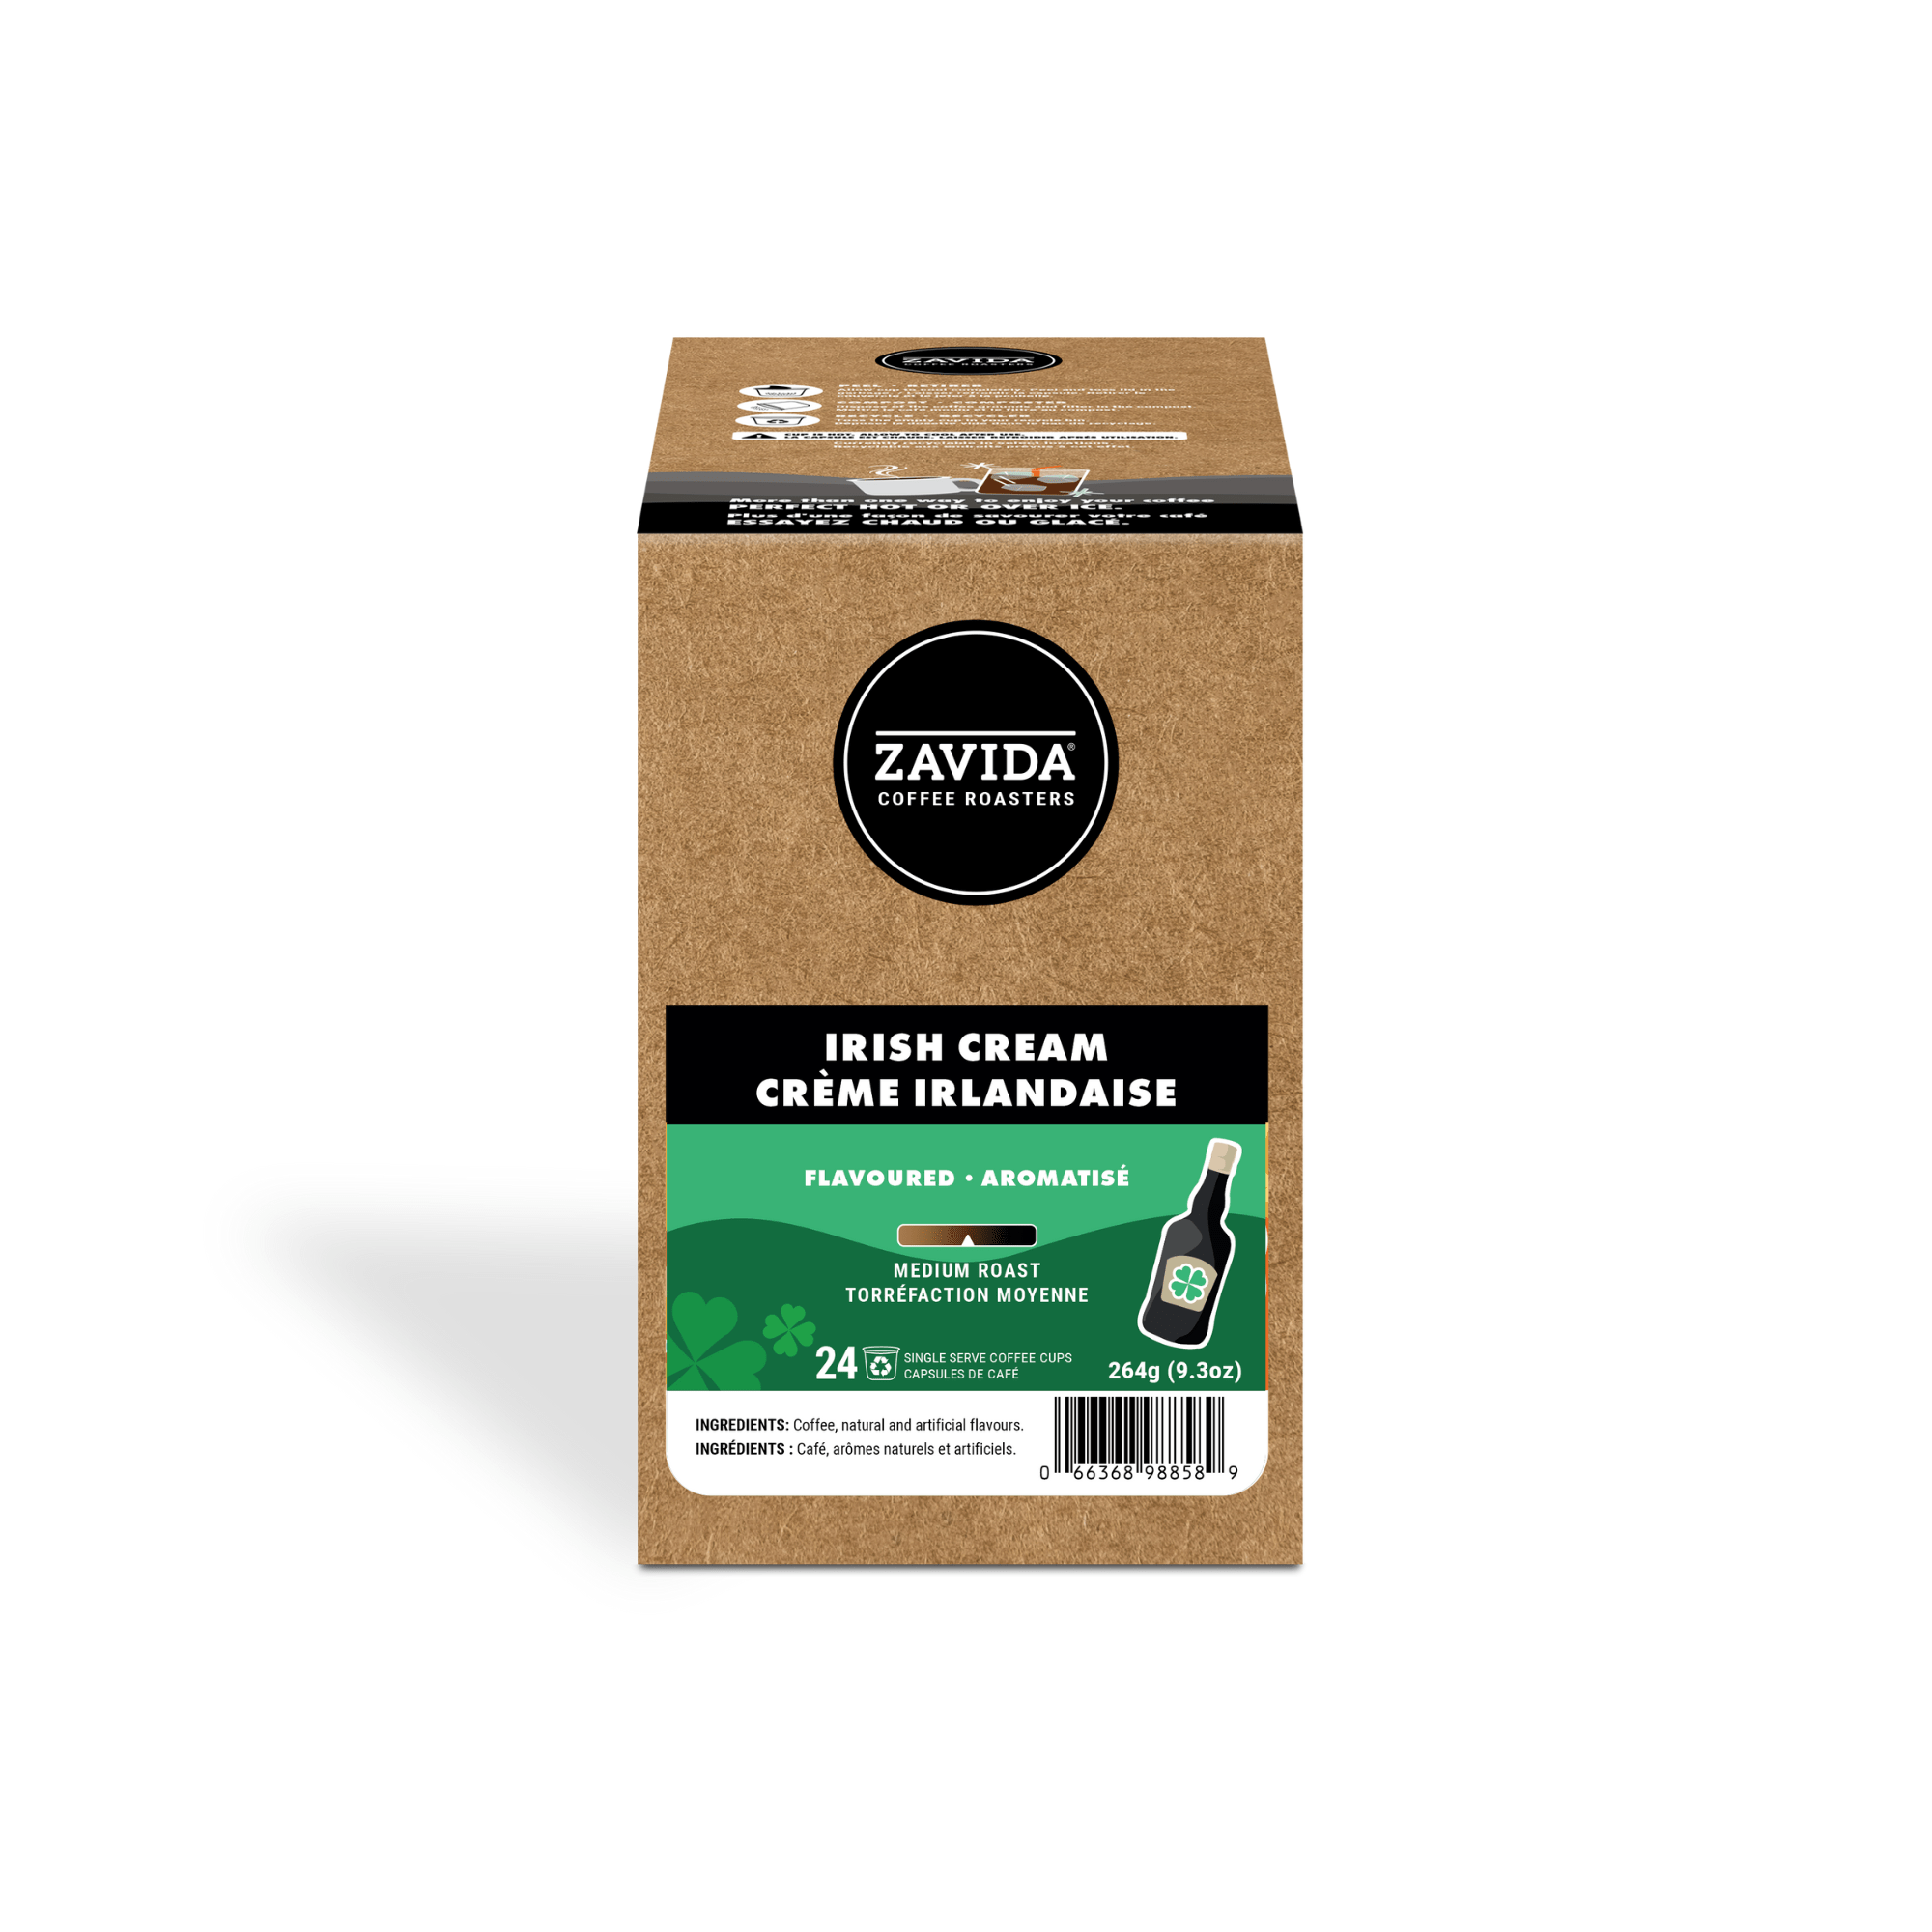 Irish Cream Single Serve Coffee - 24 Pods - Zavida Coffee